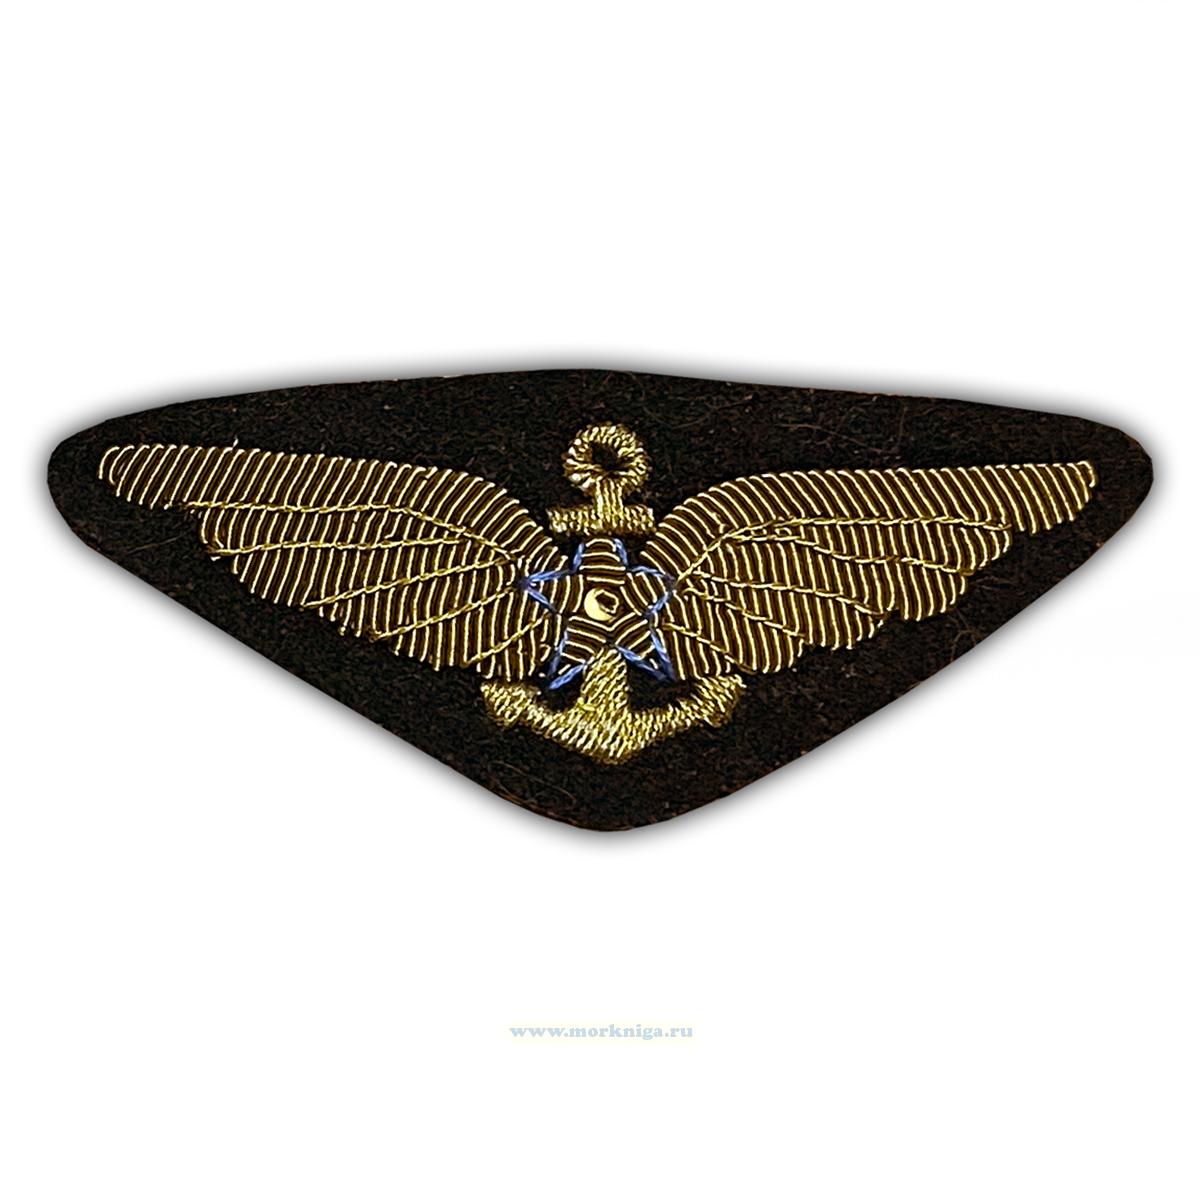 Нагрудный знак Летчика палубной авиации ВМФ СССР (бронзовый)